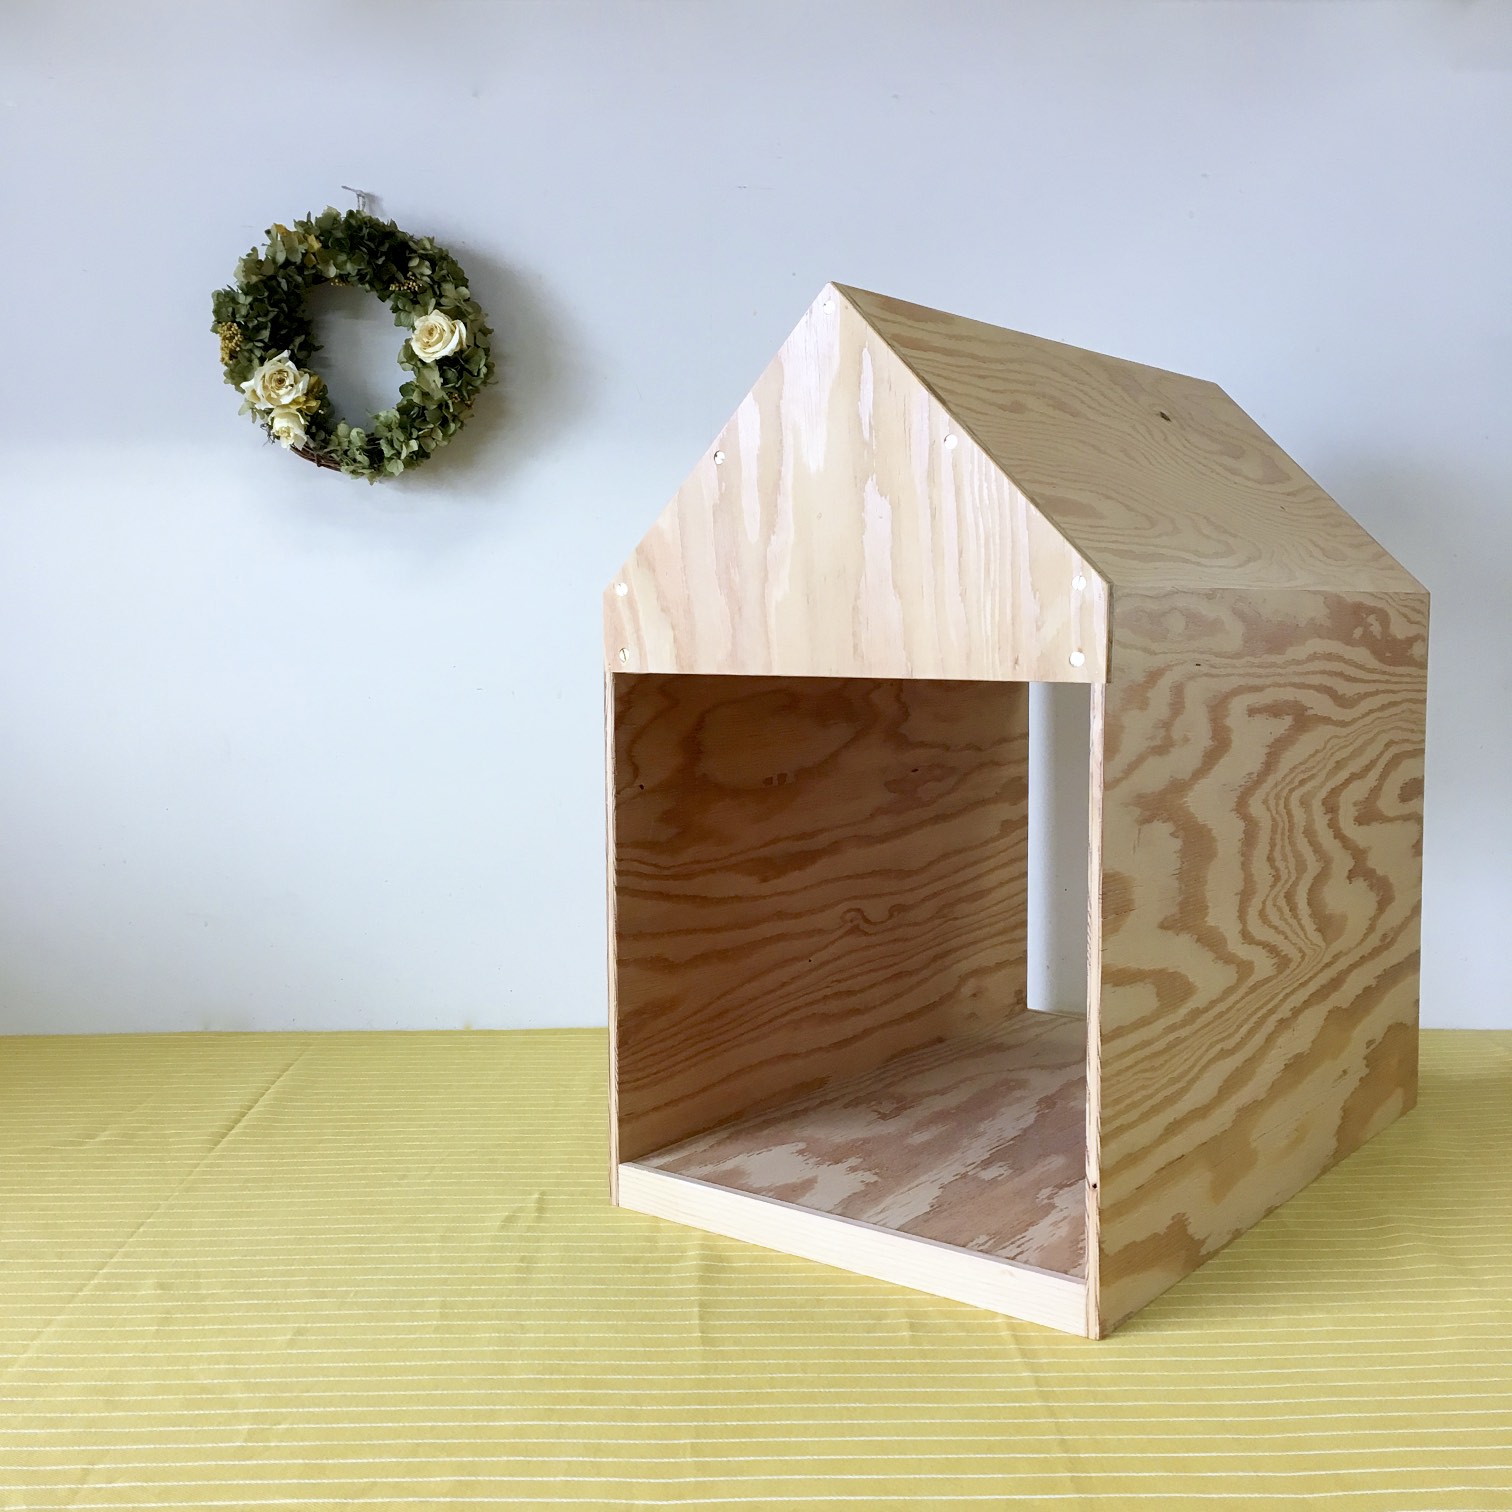 インテリアになる犬小屋 ドッグハウス ペットハウス 木製 ナチュラル 室内用 Iichi ハンドメイド クラフト作品 手仕事品の通販